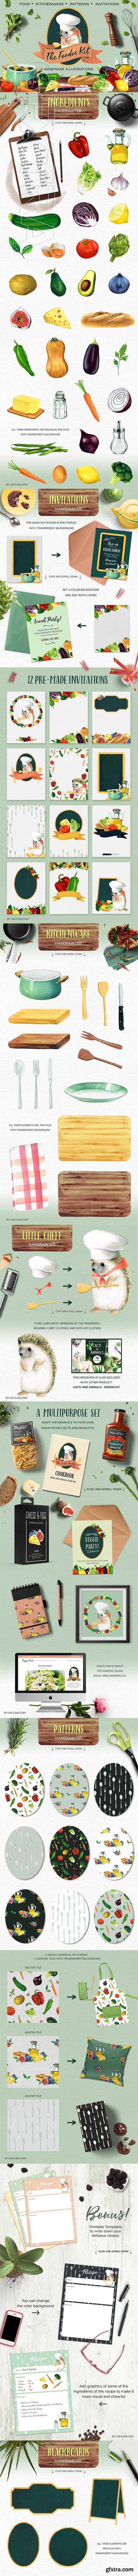 CreativeMarket - The Foodie Kit - Food Illustrations 2417867